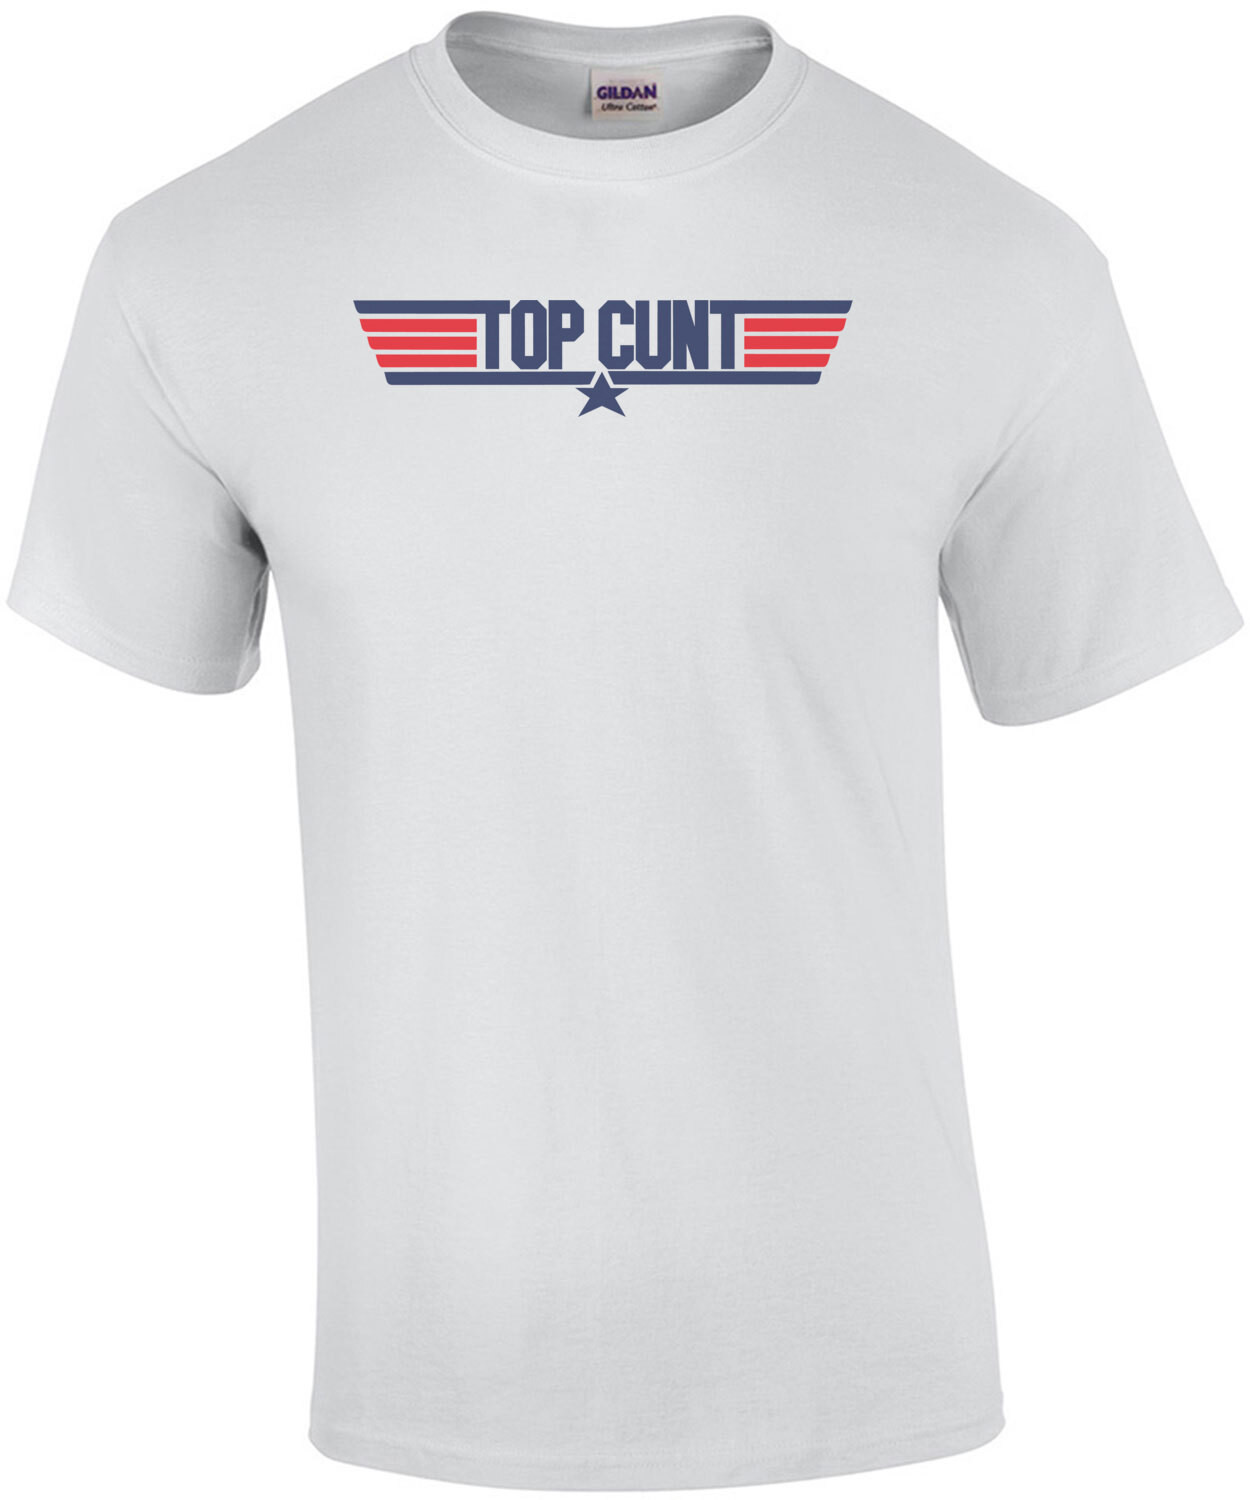 Top Cunt - Top Gun Parody - Rude Offensive T-Shirt